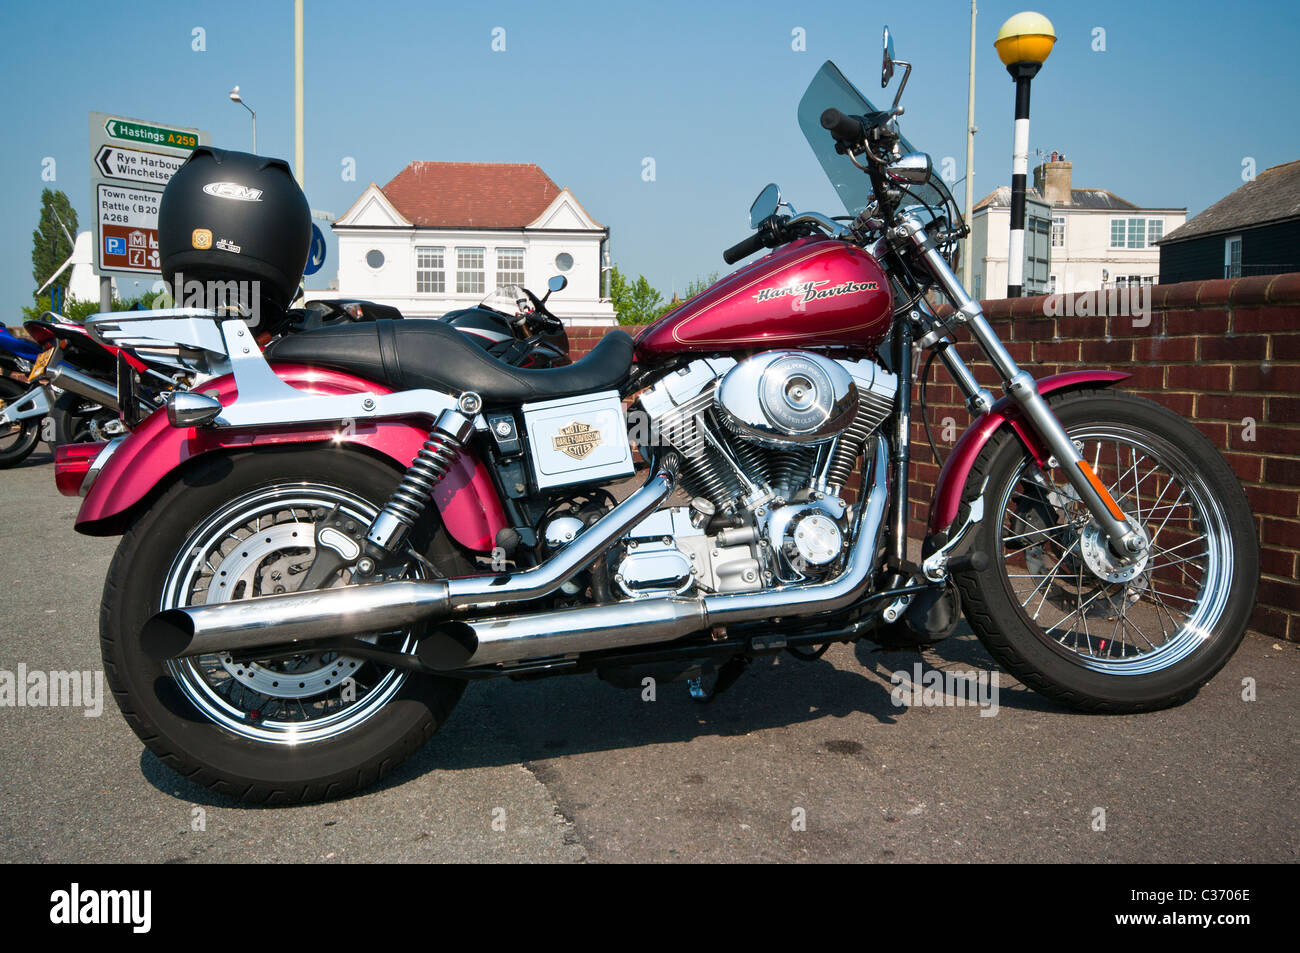 Una motocicleta Harley Davidson Foto de stock